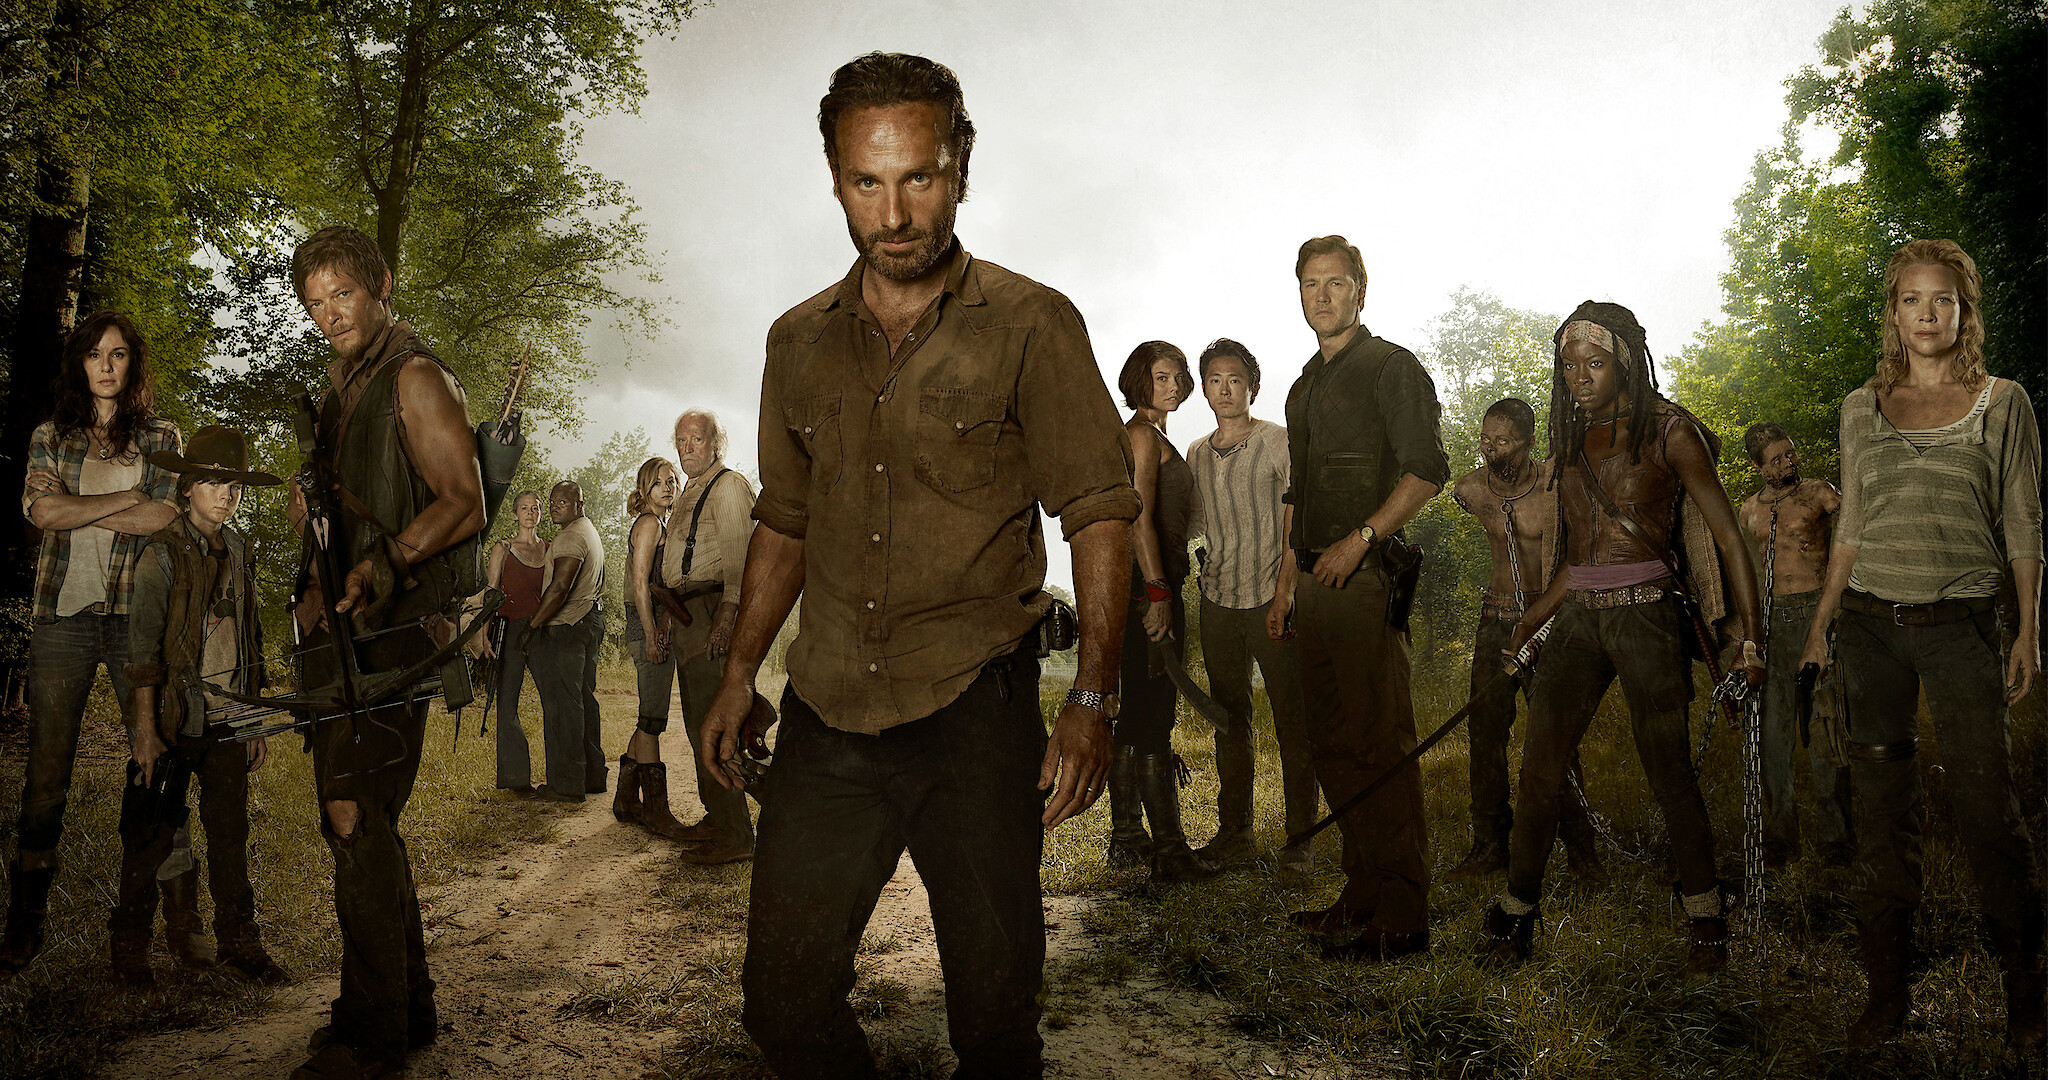 In its season premiere, The Walking Dead's brutal violence finally